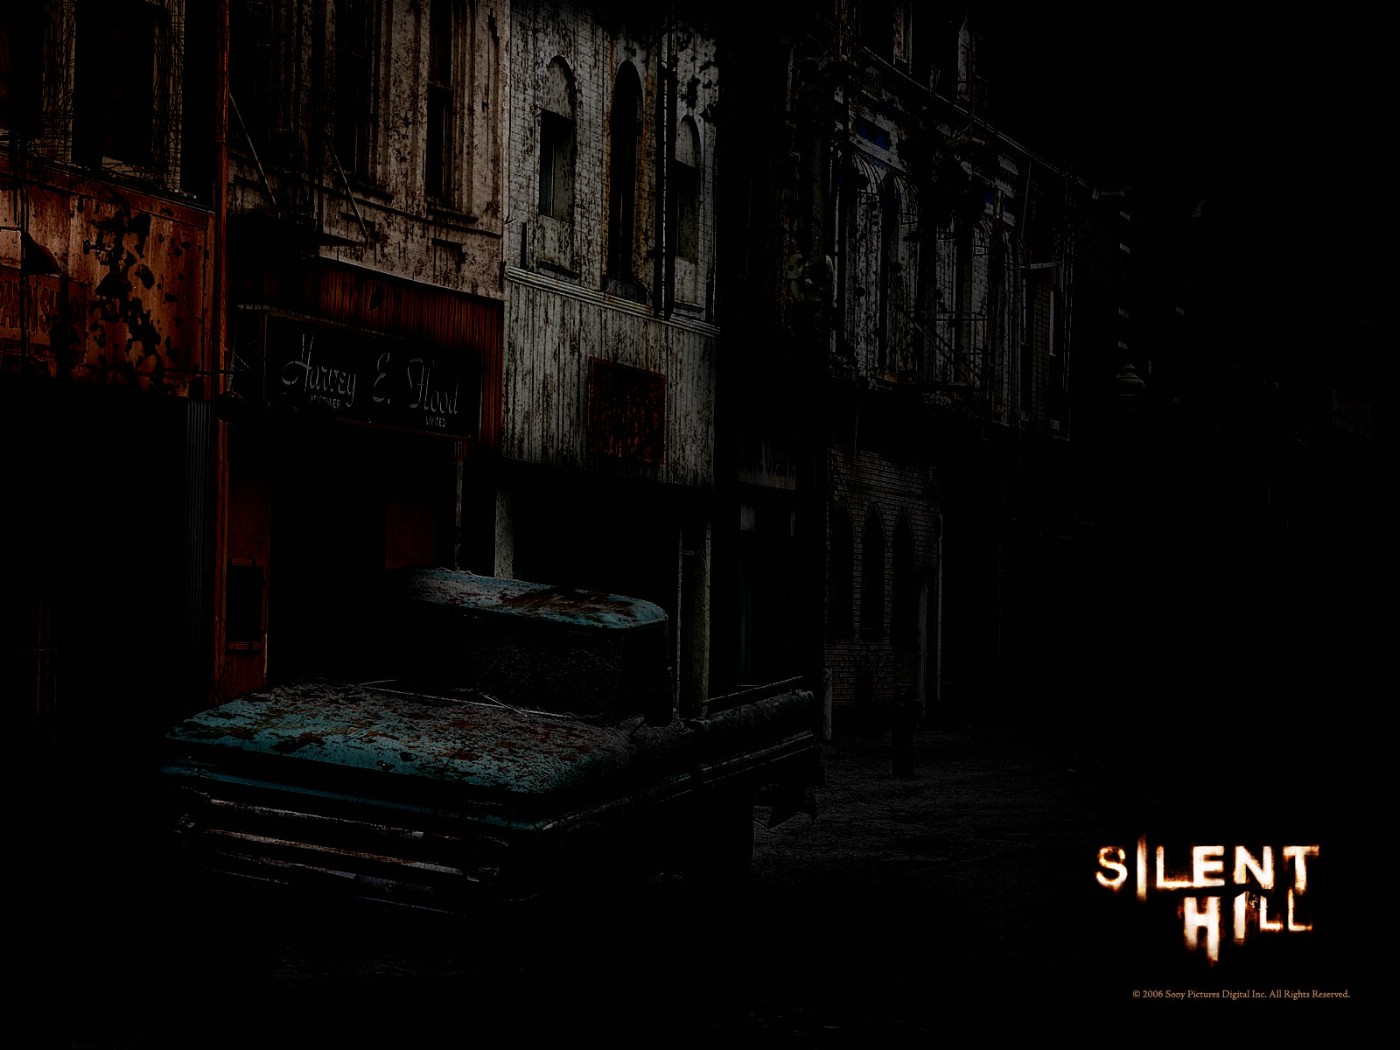 壁纸1400x1050 Movie wallpaper Silent Hill 2006 寂静岭 电影壁纸壁纸 恐怖电影《寂静岭 Silent Hill》壁纸 恐怖电影《寂静岭 Silent Hill》图片 恐怖电影《寂静岭 Silent Hill》素材 影视壁纸 影视图库 影视图片素材桌面壁纸